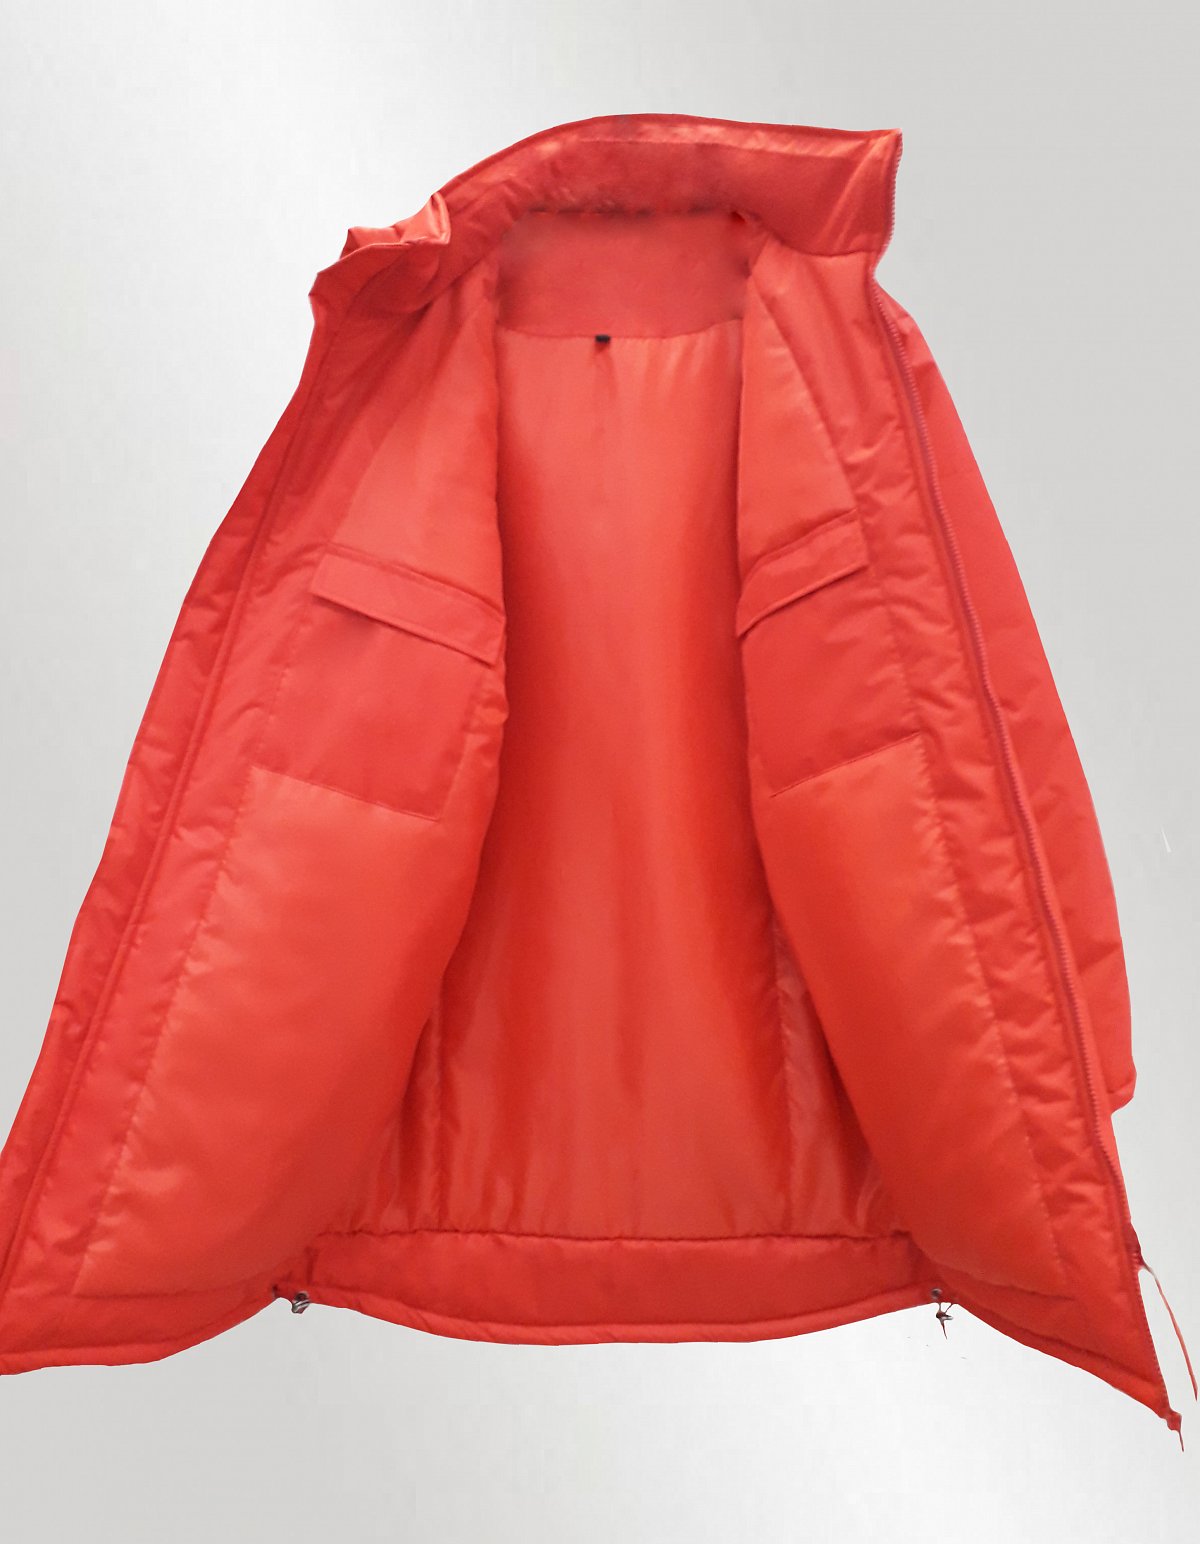 Пошив курток - пример модели куртка удлиненная